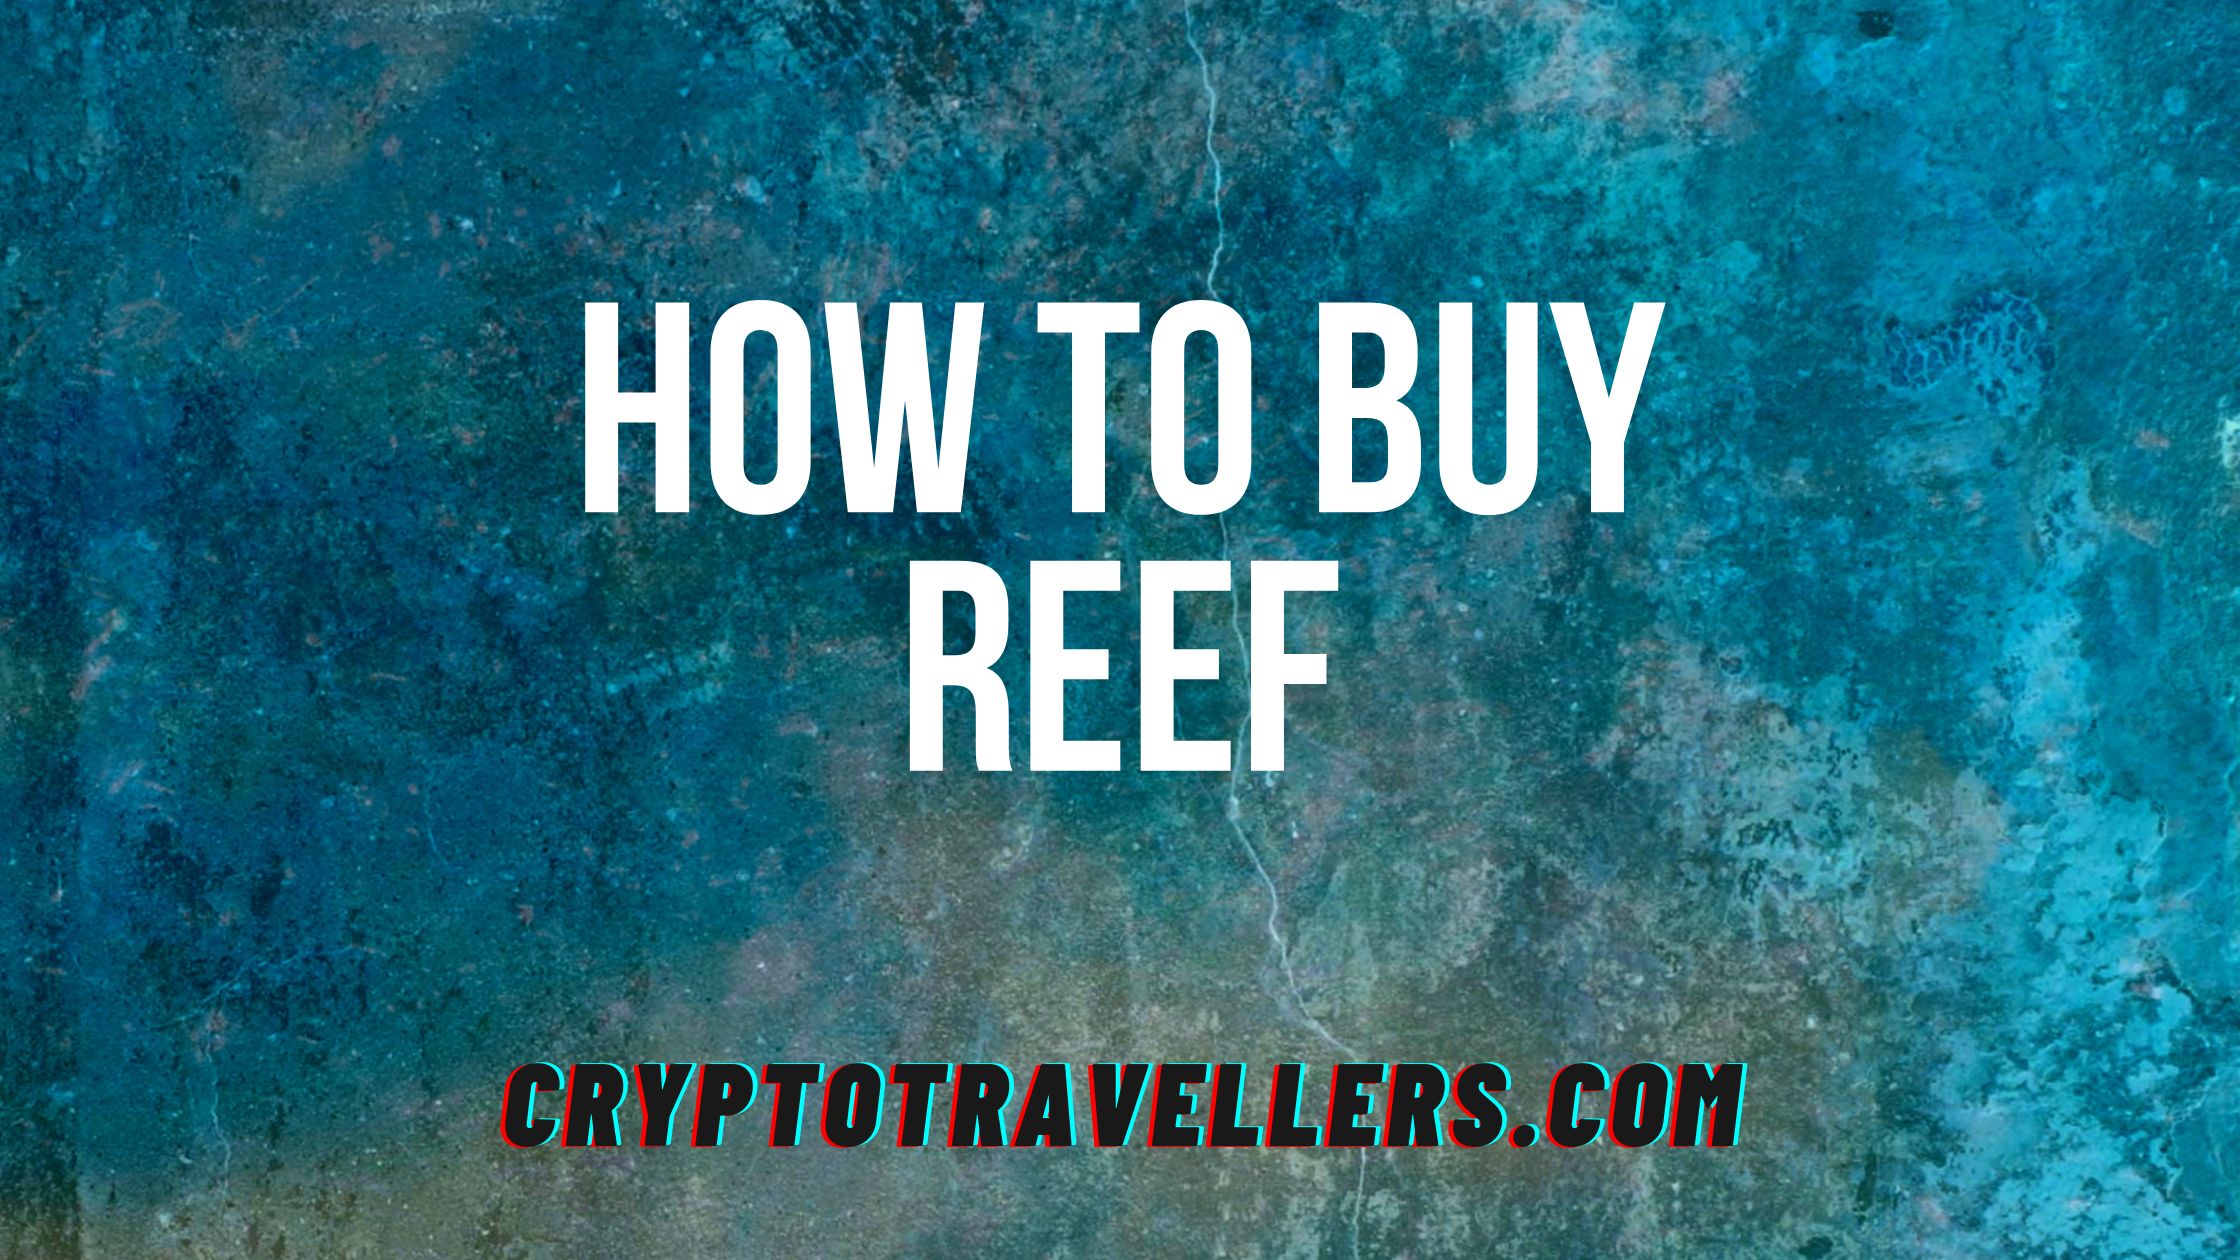 Buy Reef